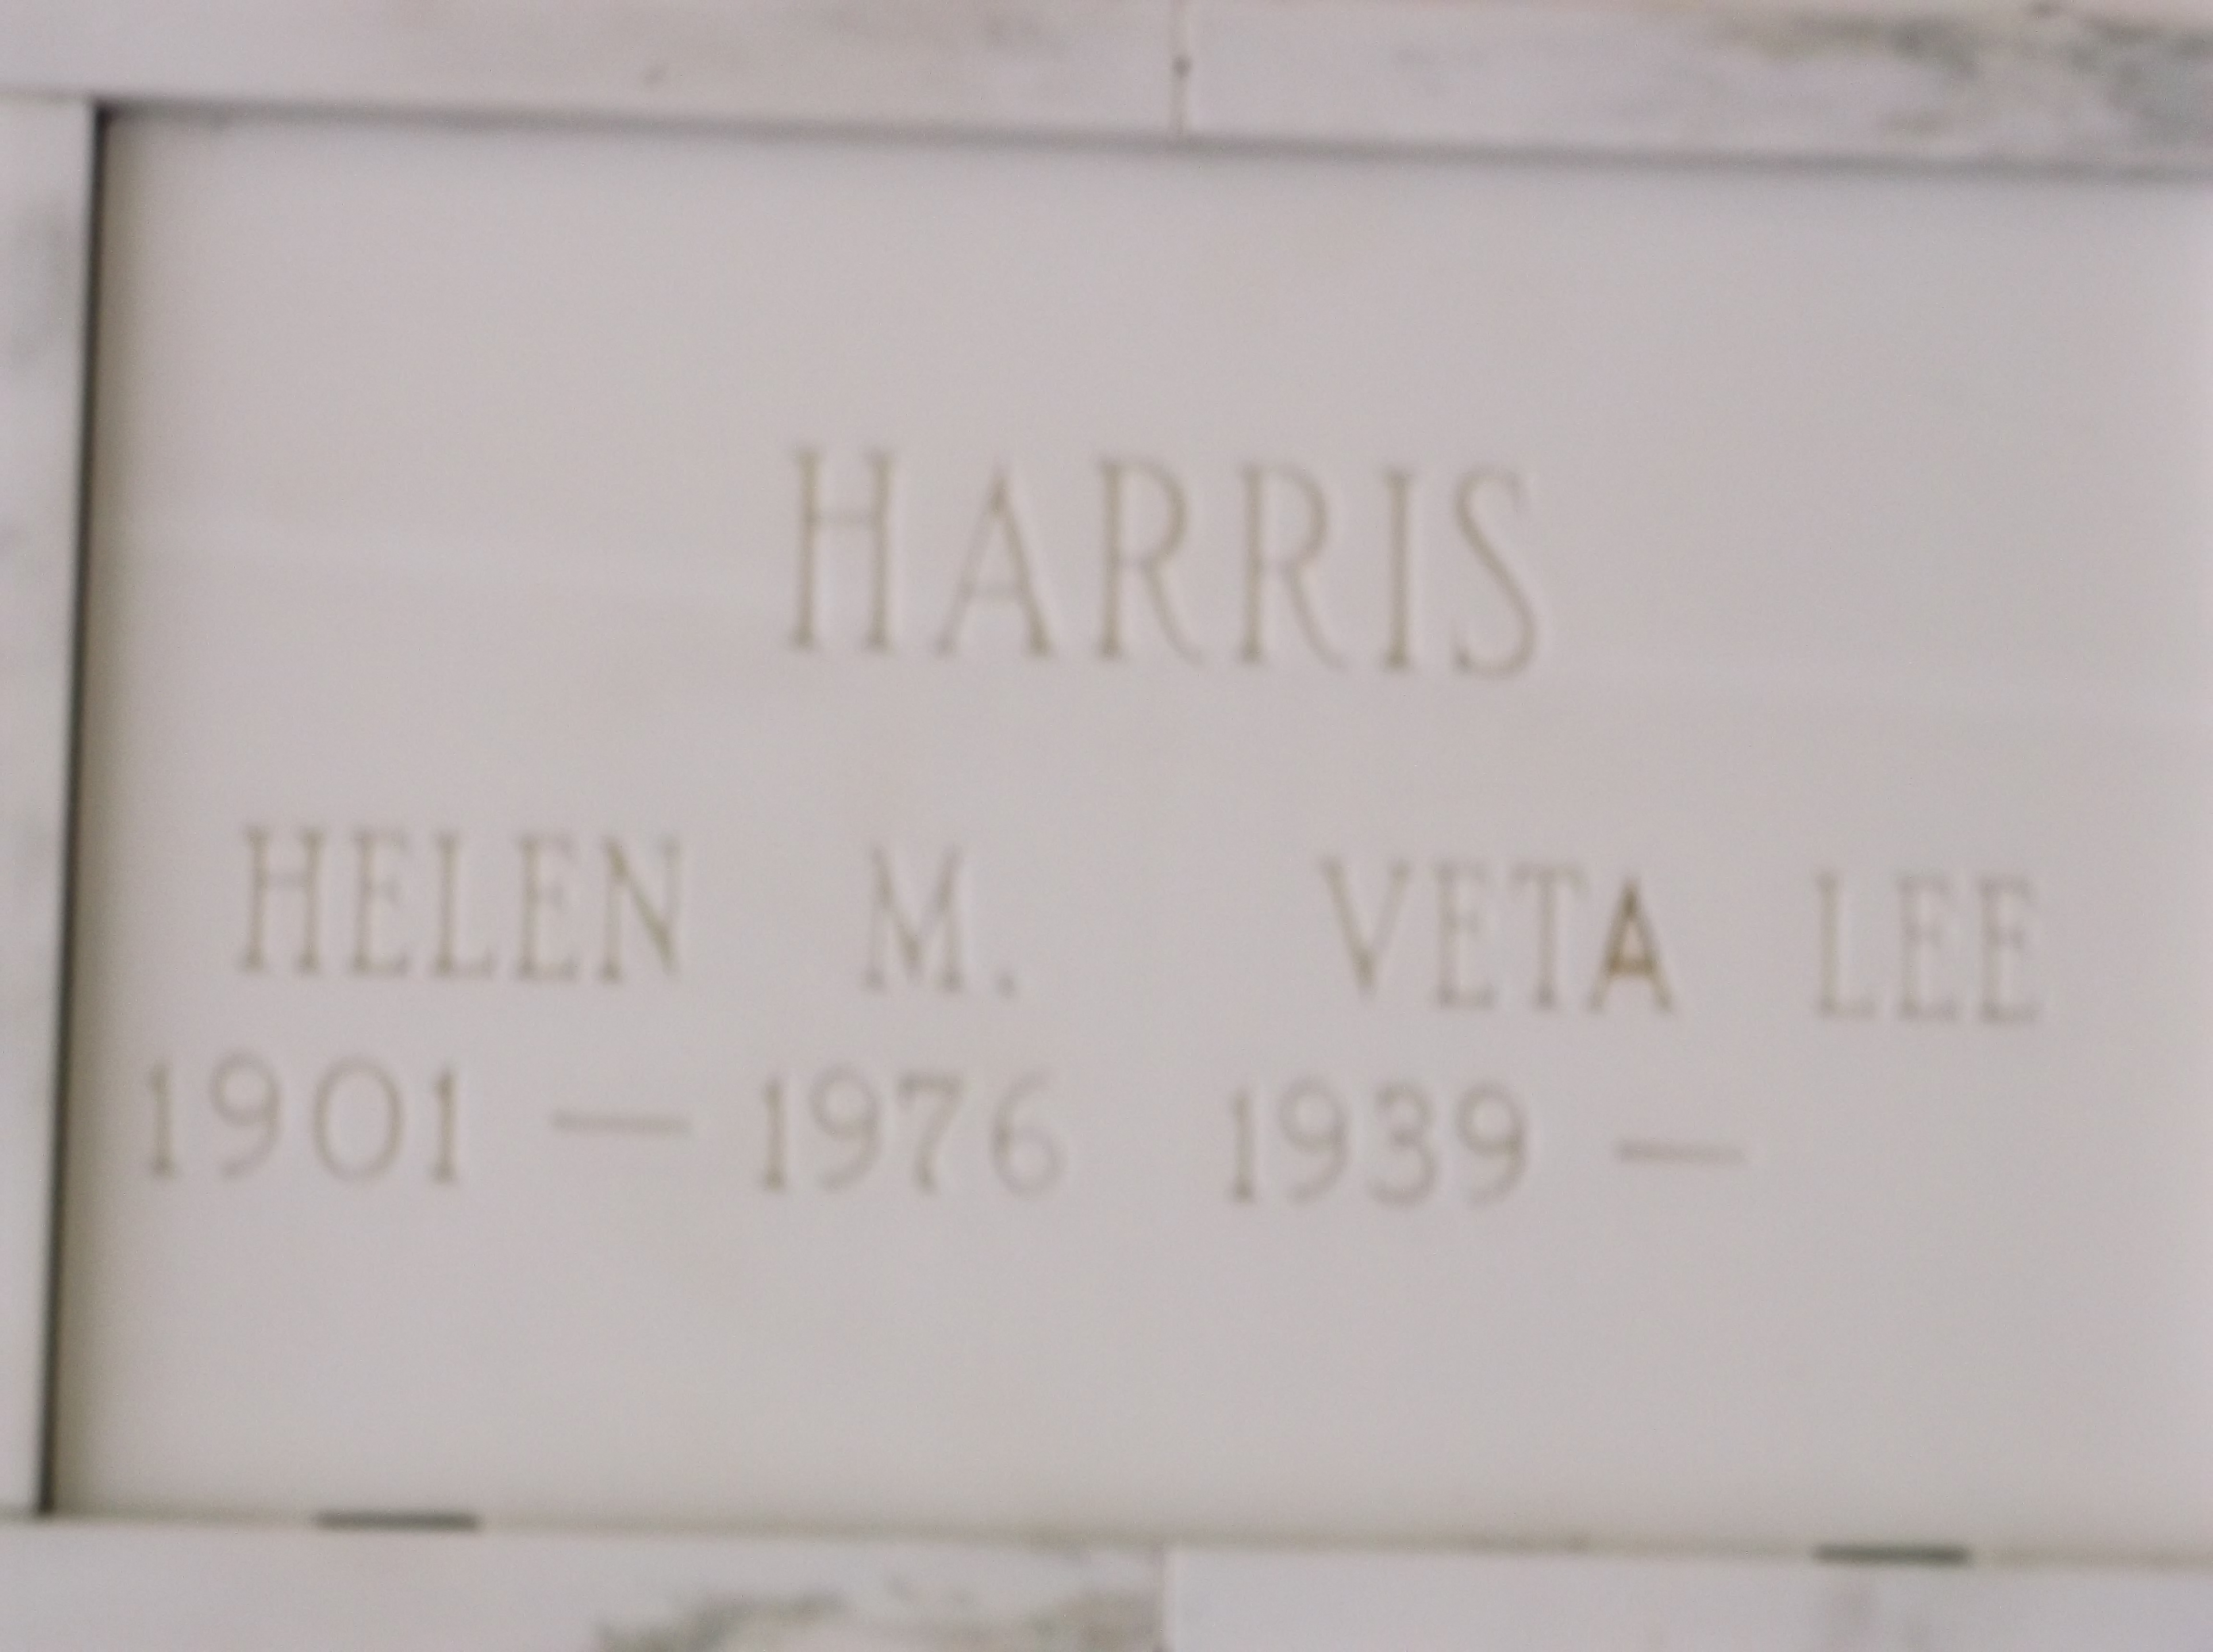 Helen M Harris